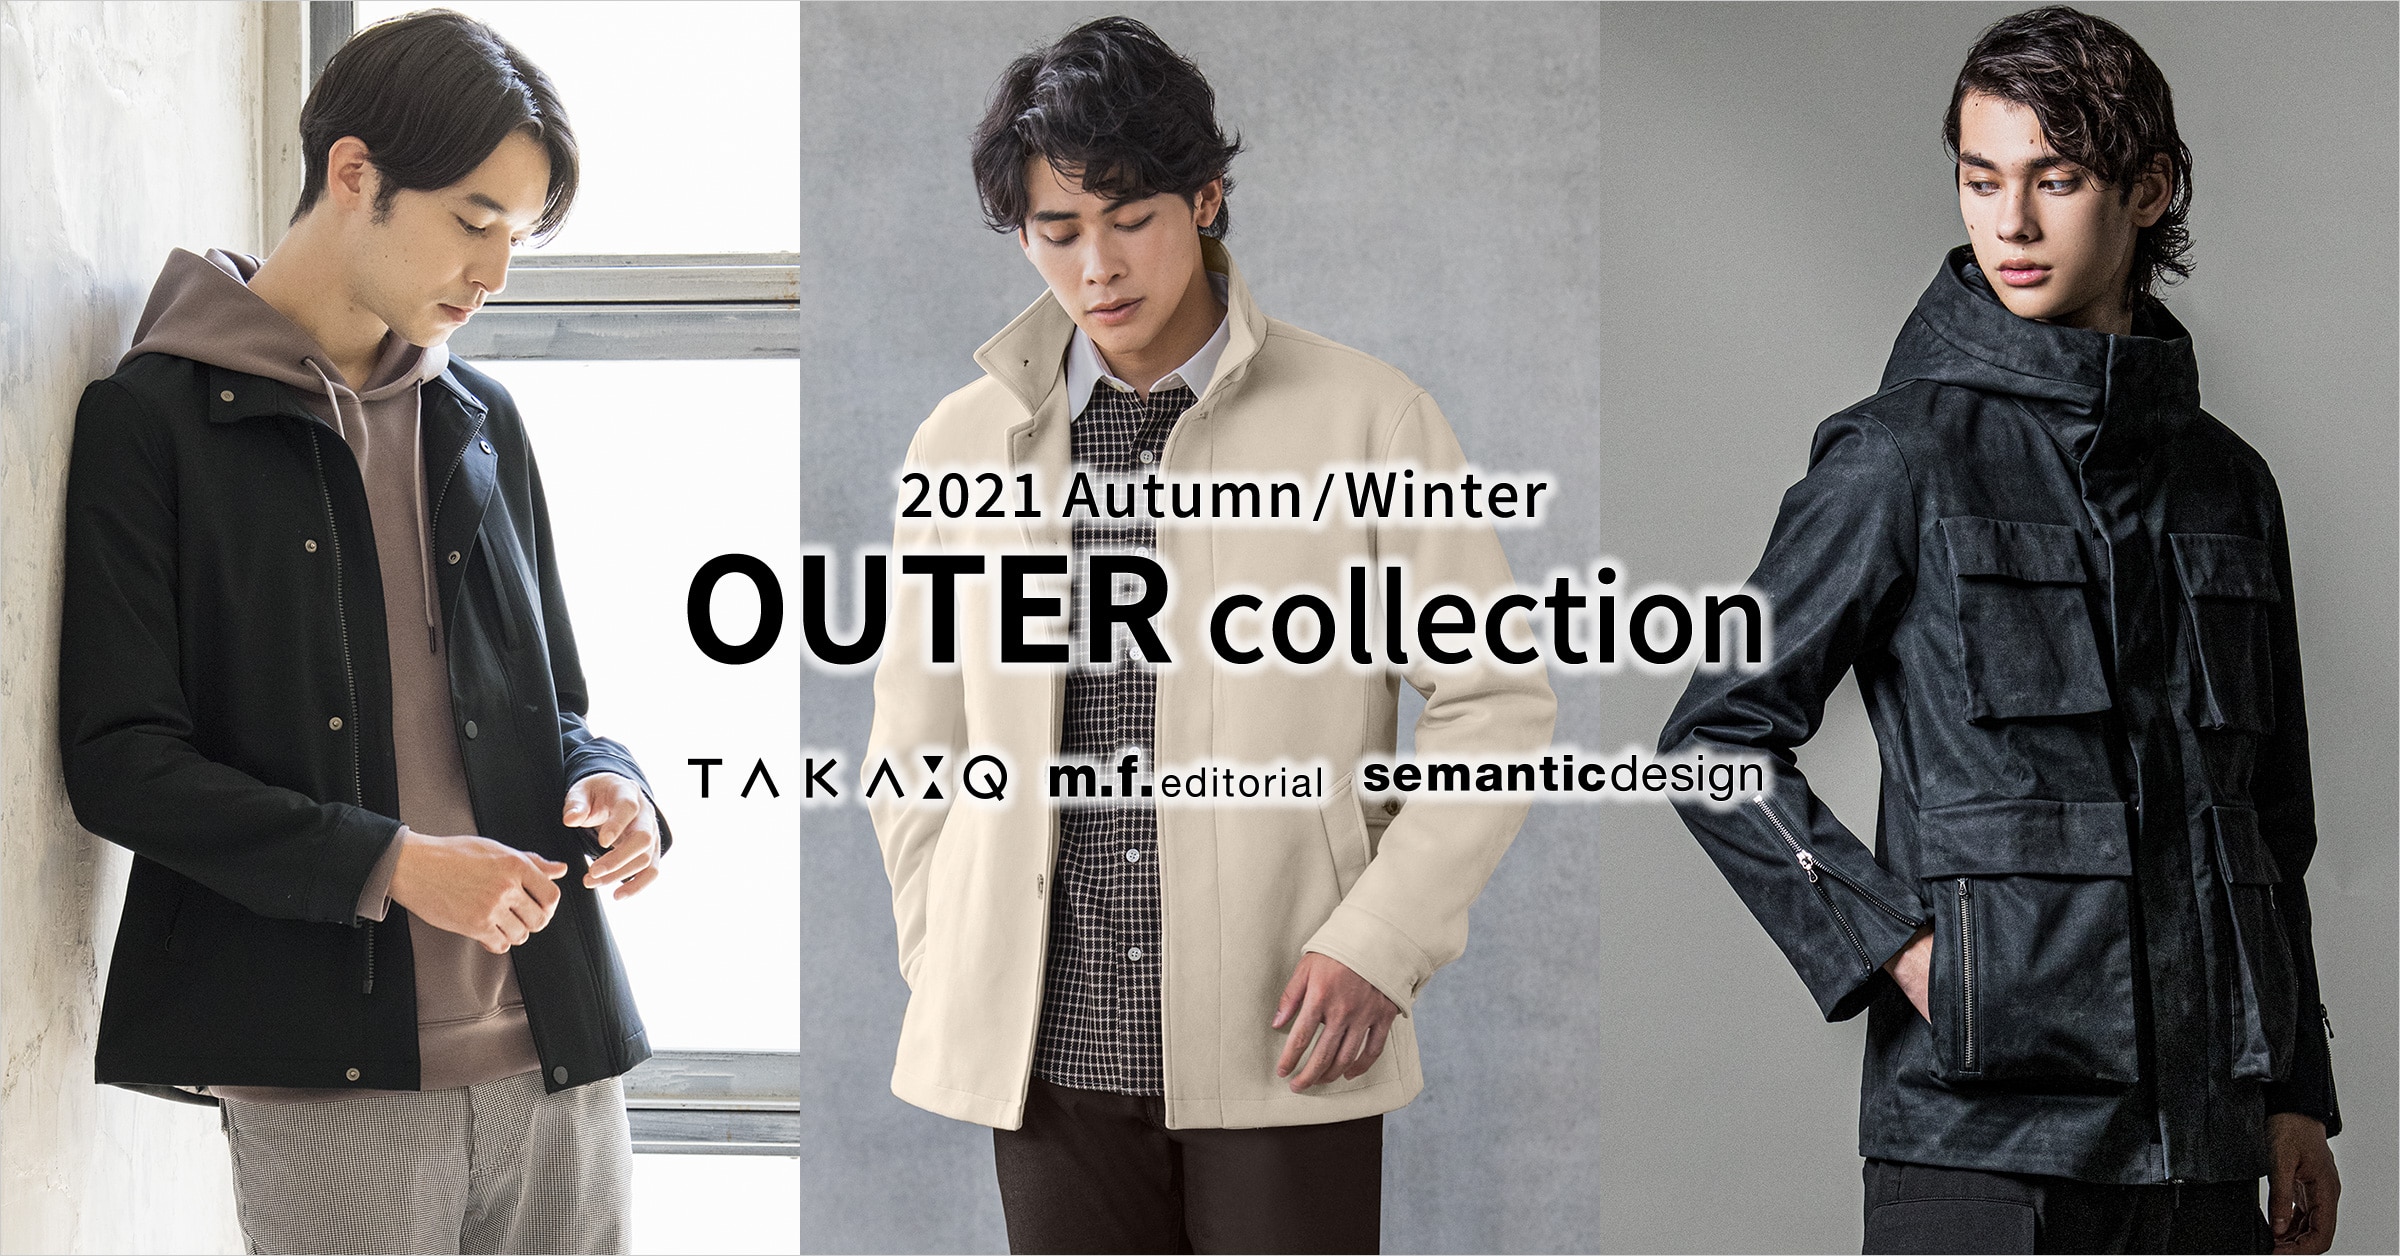 taka-q(タカキュー) m.f.editorial(エム・エフ・エディトリアル) semanticdesign(セマンティックデザイン) 2021 Autumn/Winter OUTER collection